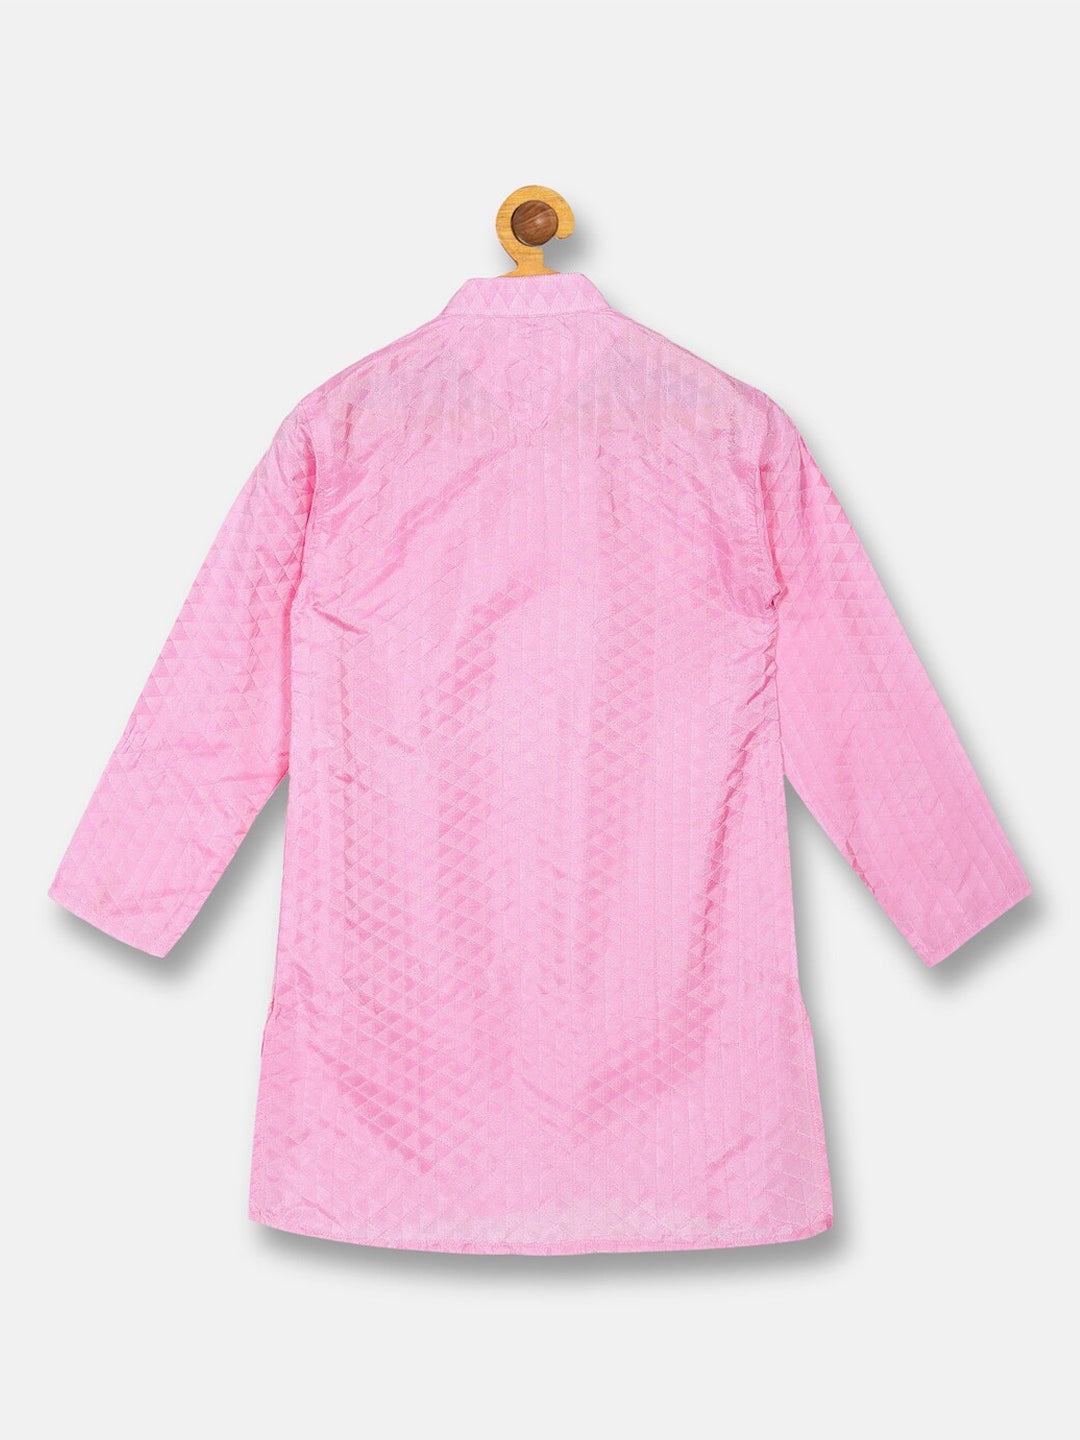 Sethukrishna Boys Pink Kurta with Pyjamas set - Distacart